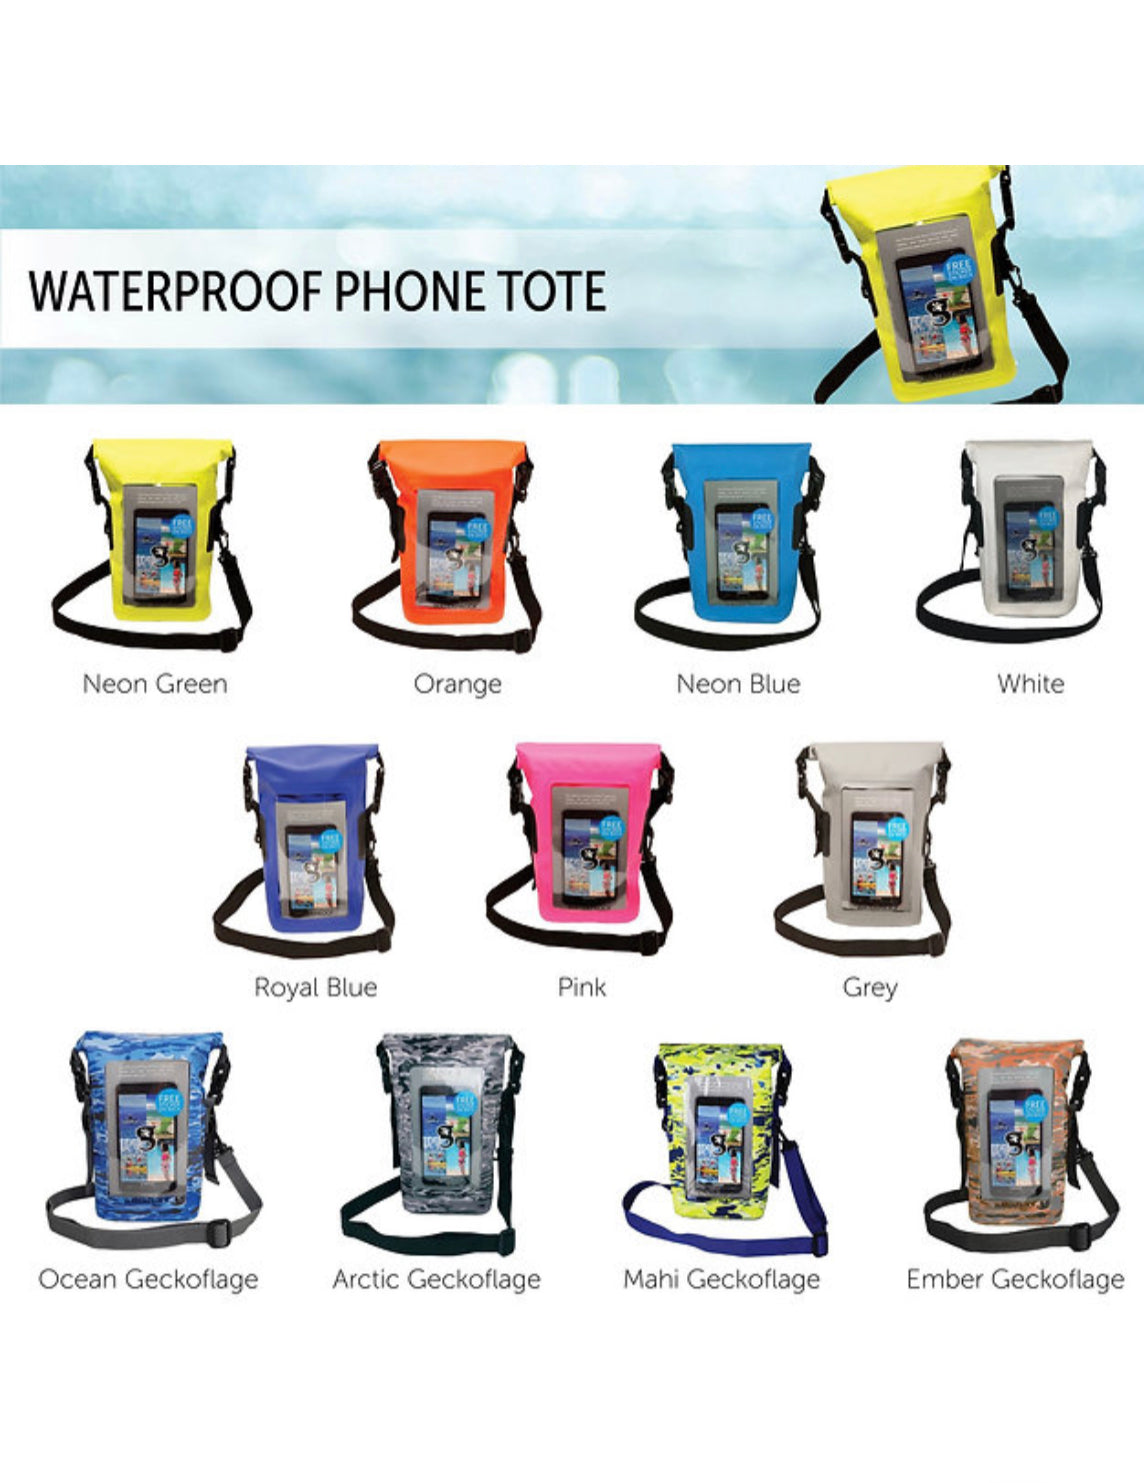 Waterproof Phone Tote